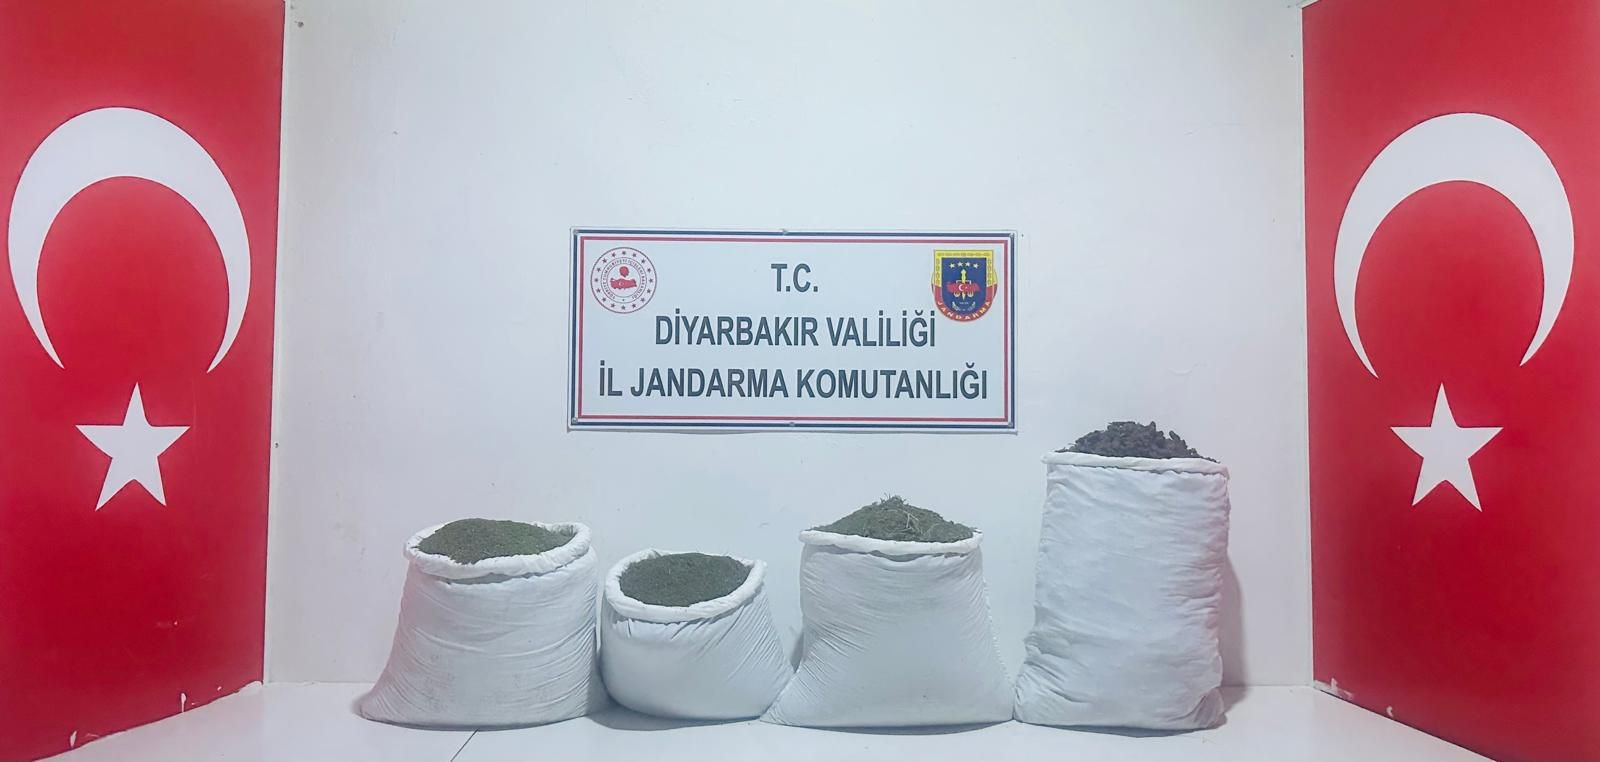 Diyarbakır'da uyuşturucu operasyonu: 68 kilogram esrar ele geçirildi